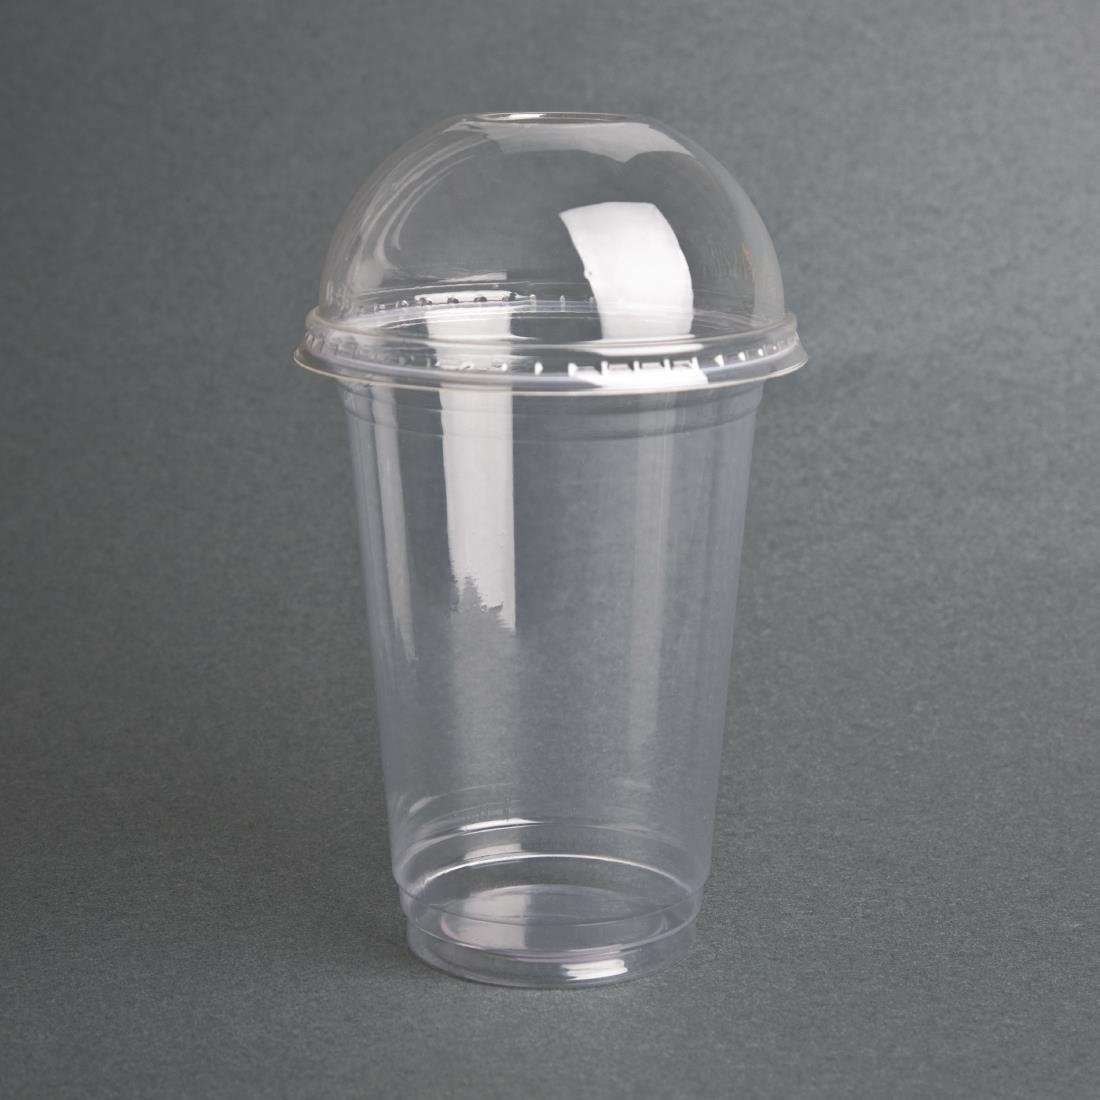 Couvercles convexes adaptés aux gobelets de boissons gazeuses compostables en PLA | Par 1000